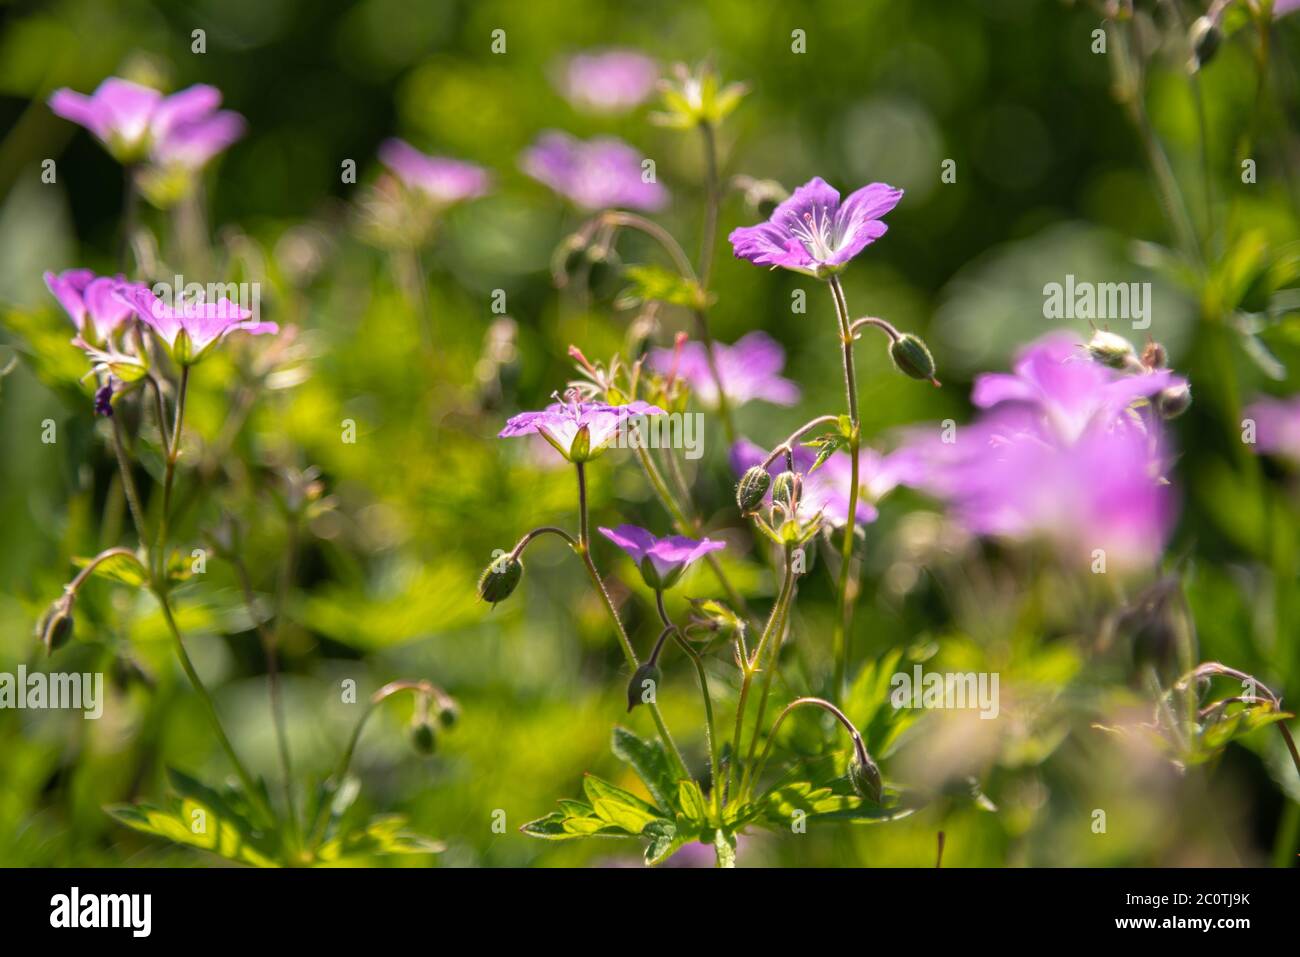 Geranium sylvaticum or woodland geranium flowers Stock Photo